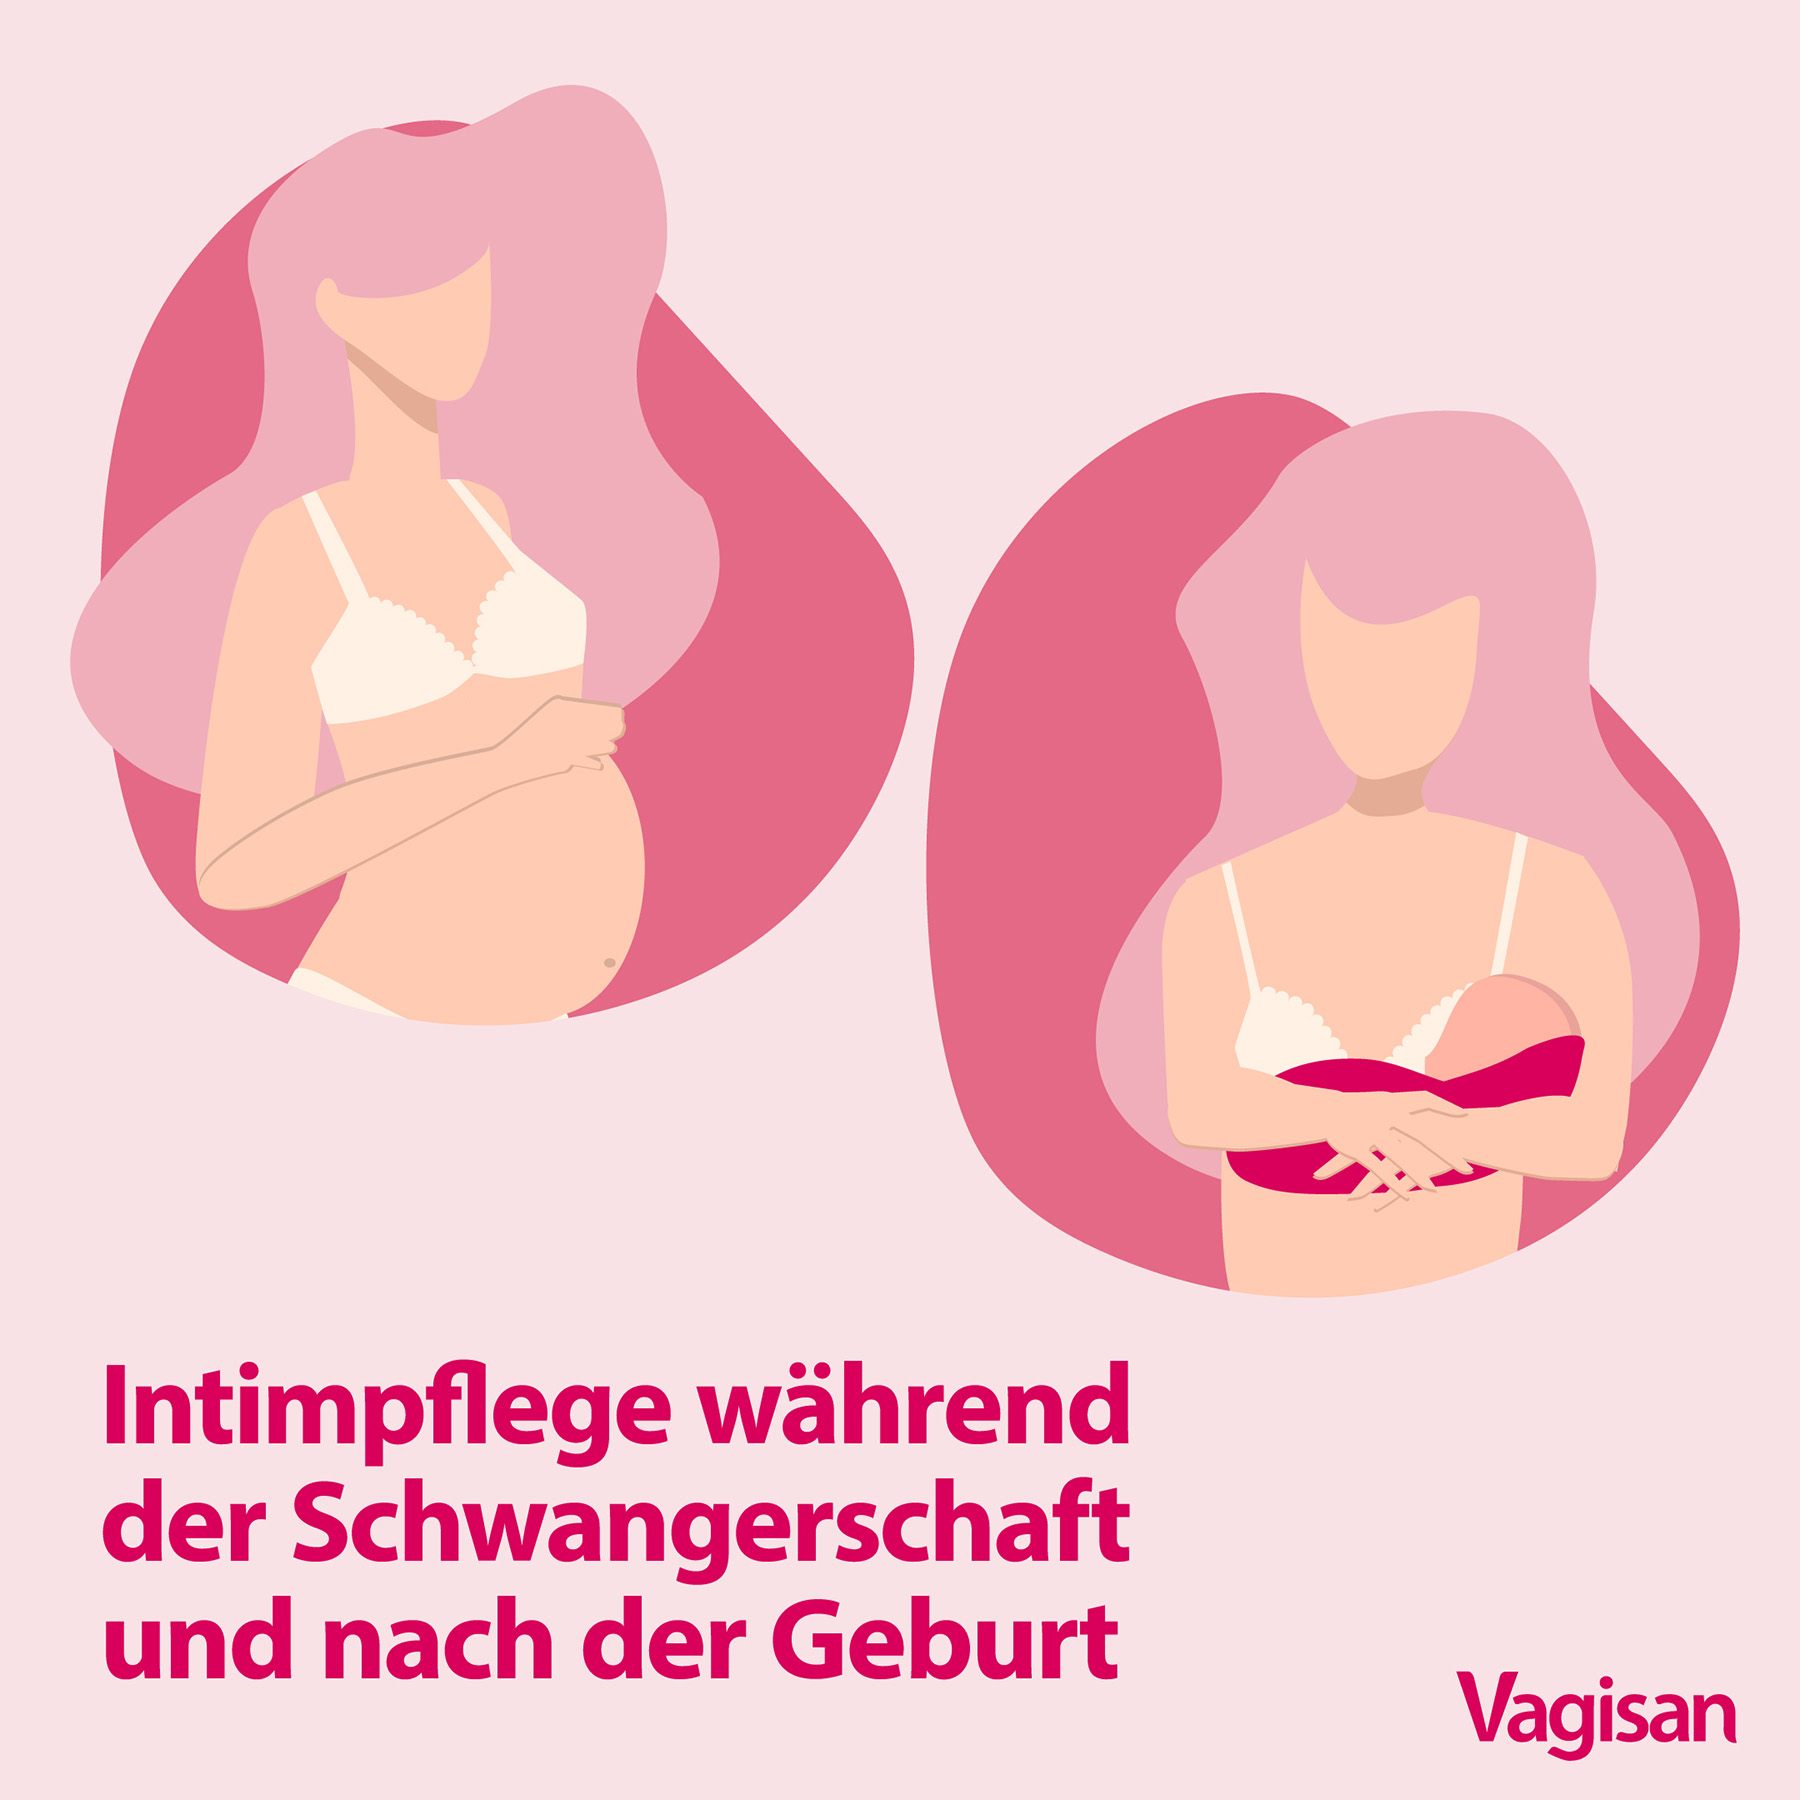 Stilisierte Illustration einer schwangeren und einer stillenden Frau als Sinnbild für die besonderen Maßnahmen der Intimpflege während der Schwangerschaft